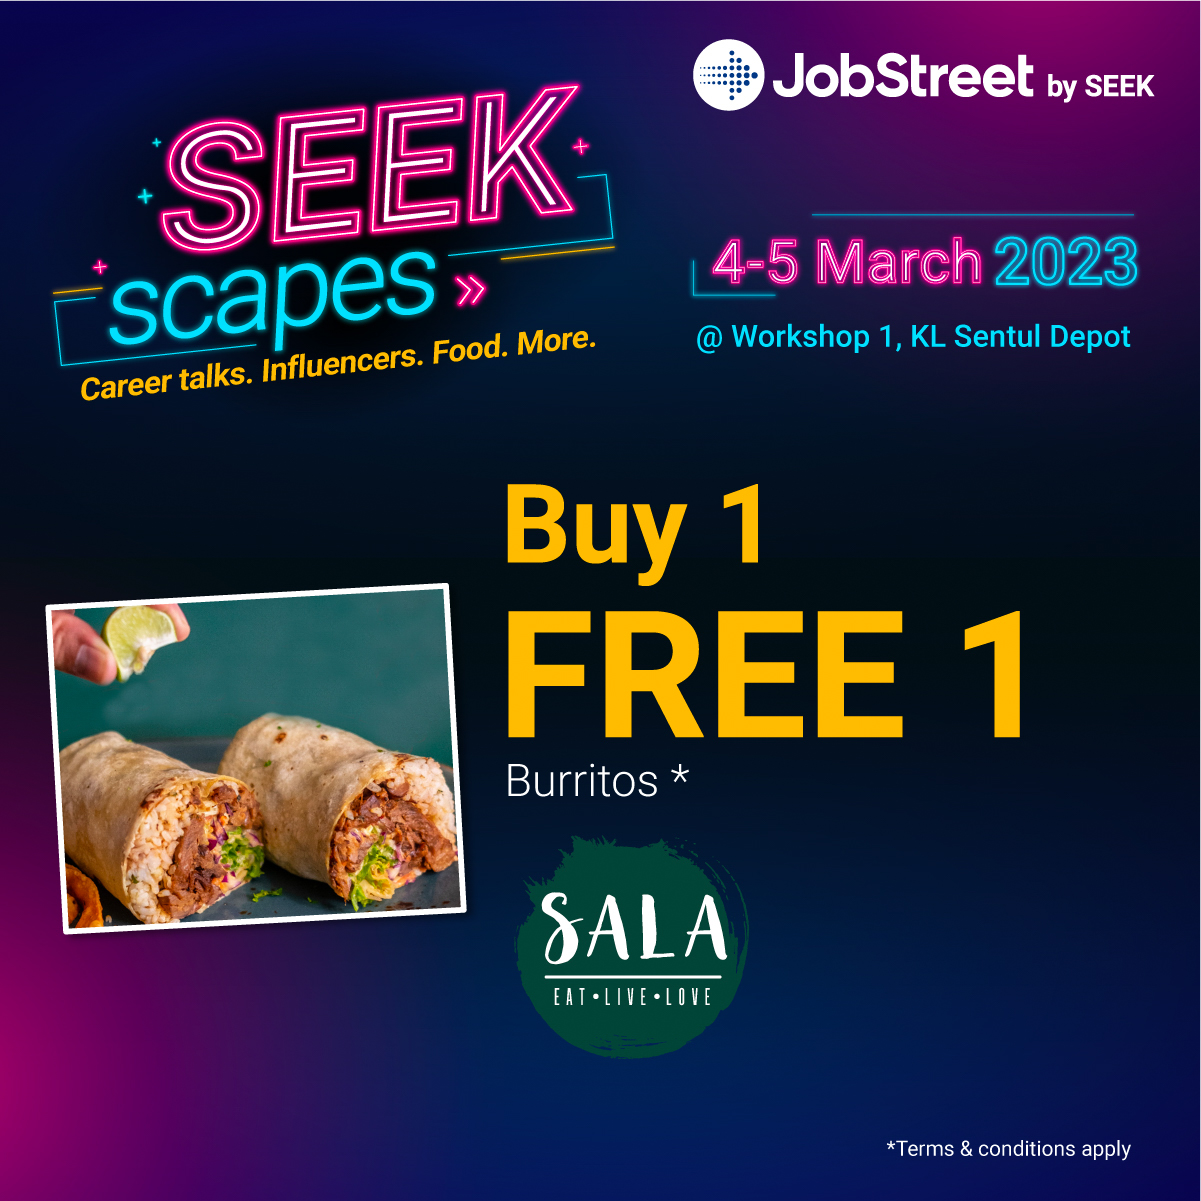 SeekScapes_F&B_r3_Sala.jpg